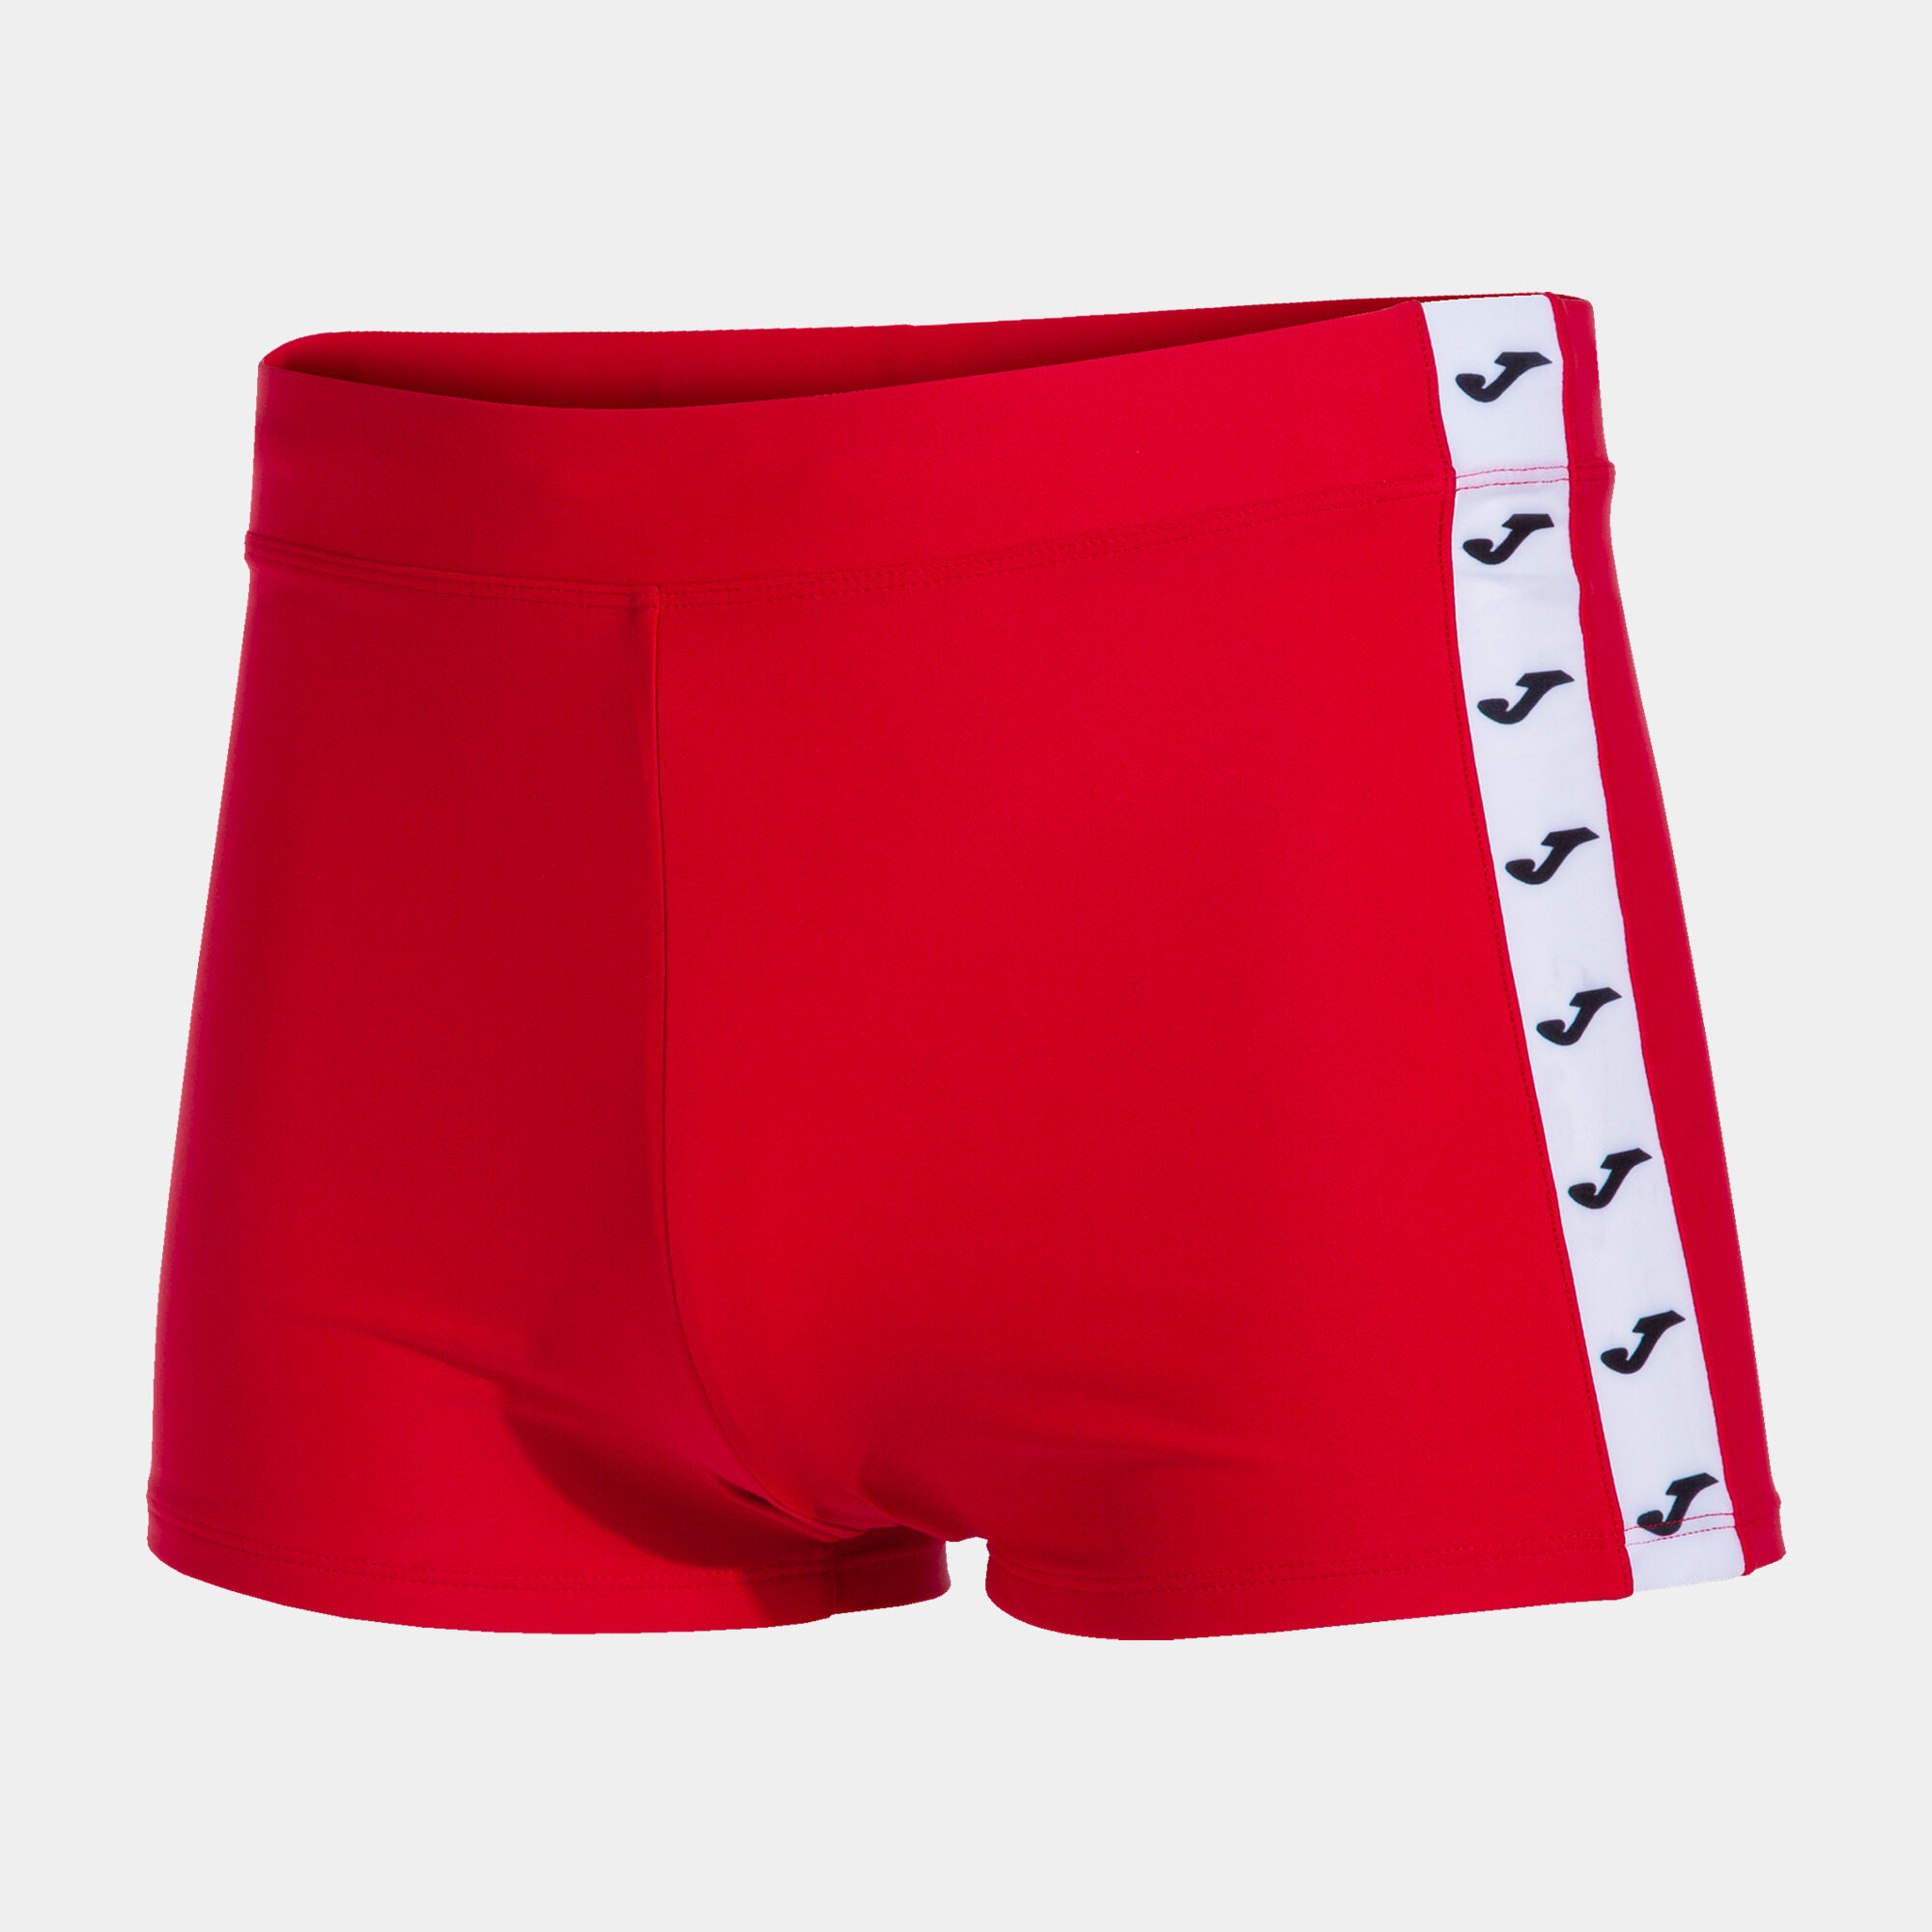 Costume boxer uomo Splash rosso